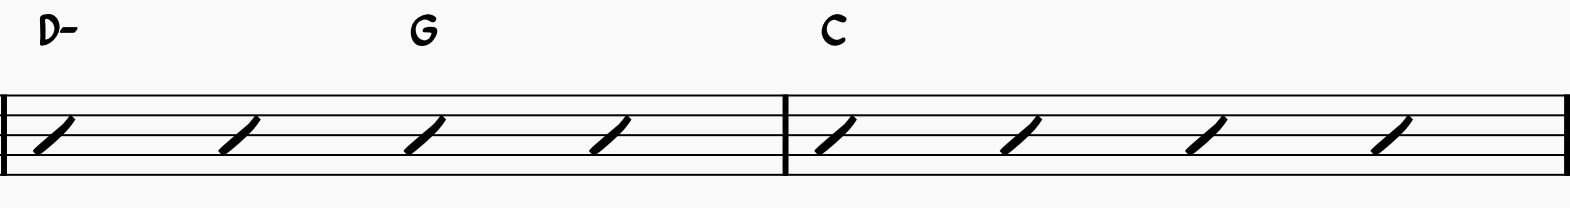 ii-V-I in the Key of C with D-, G, and C chords